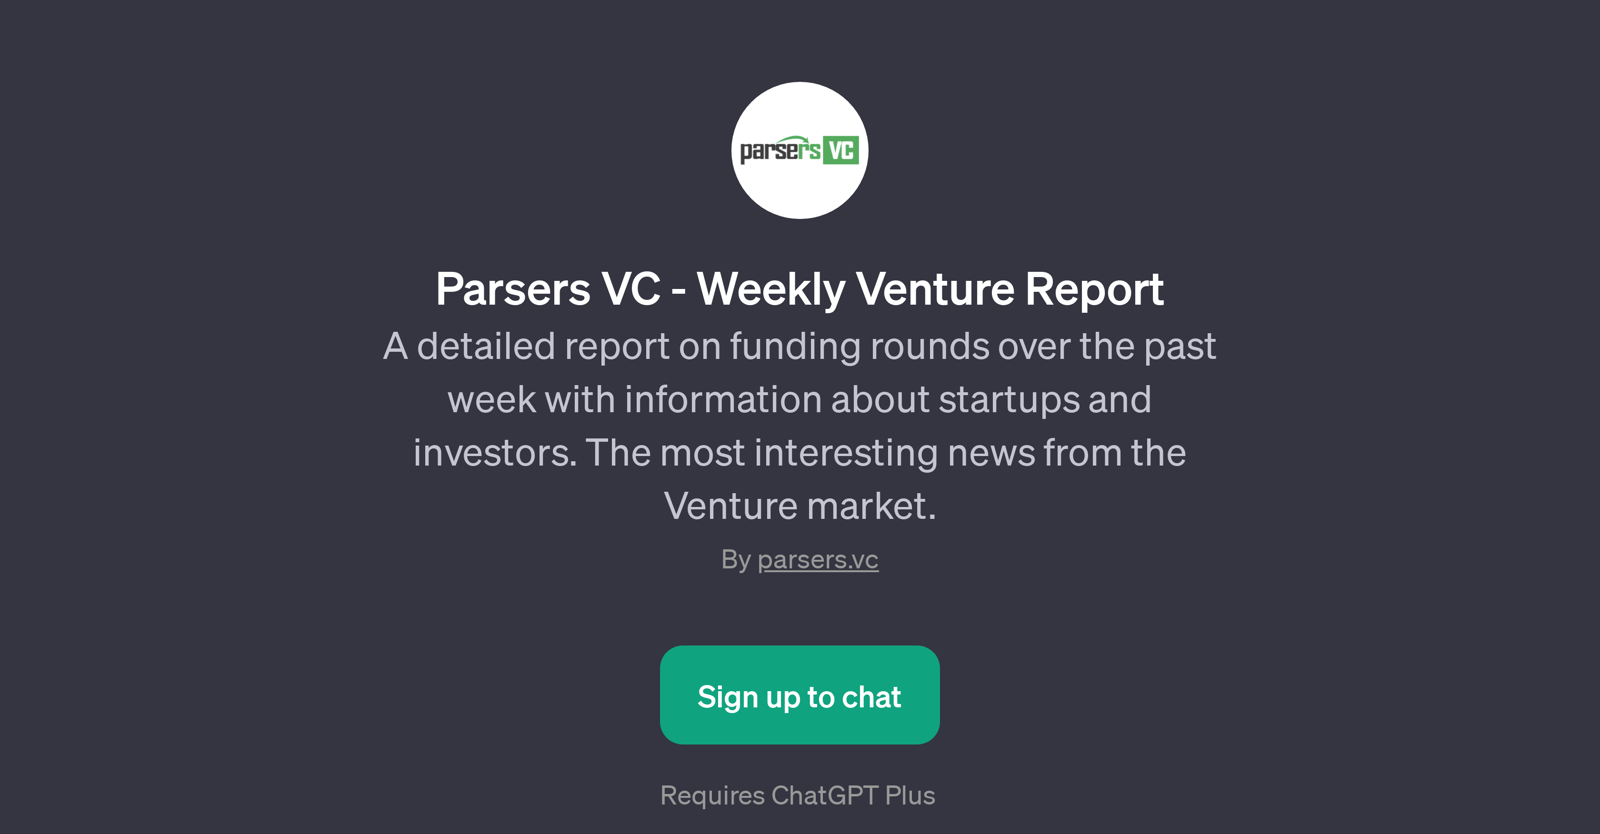 Parsers VC - Weekly Venture Report website